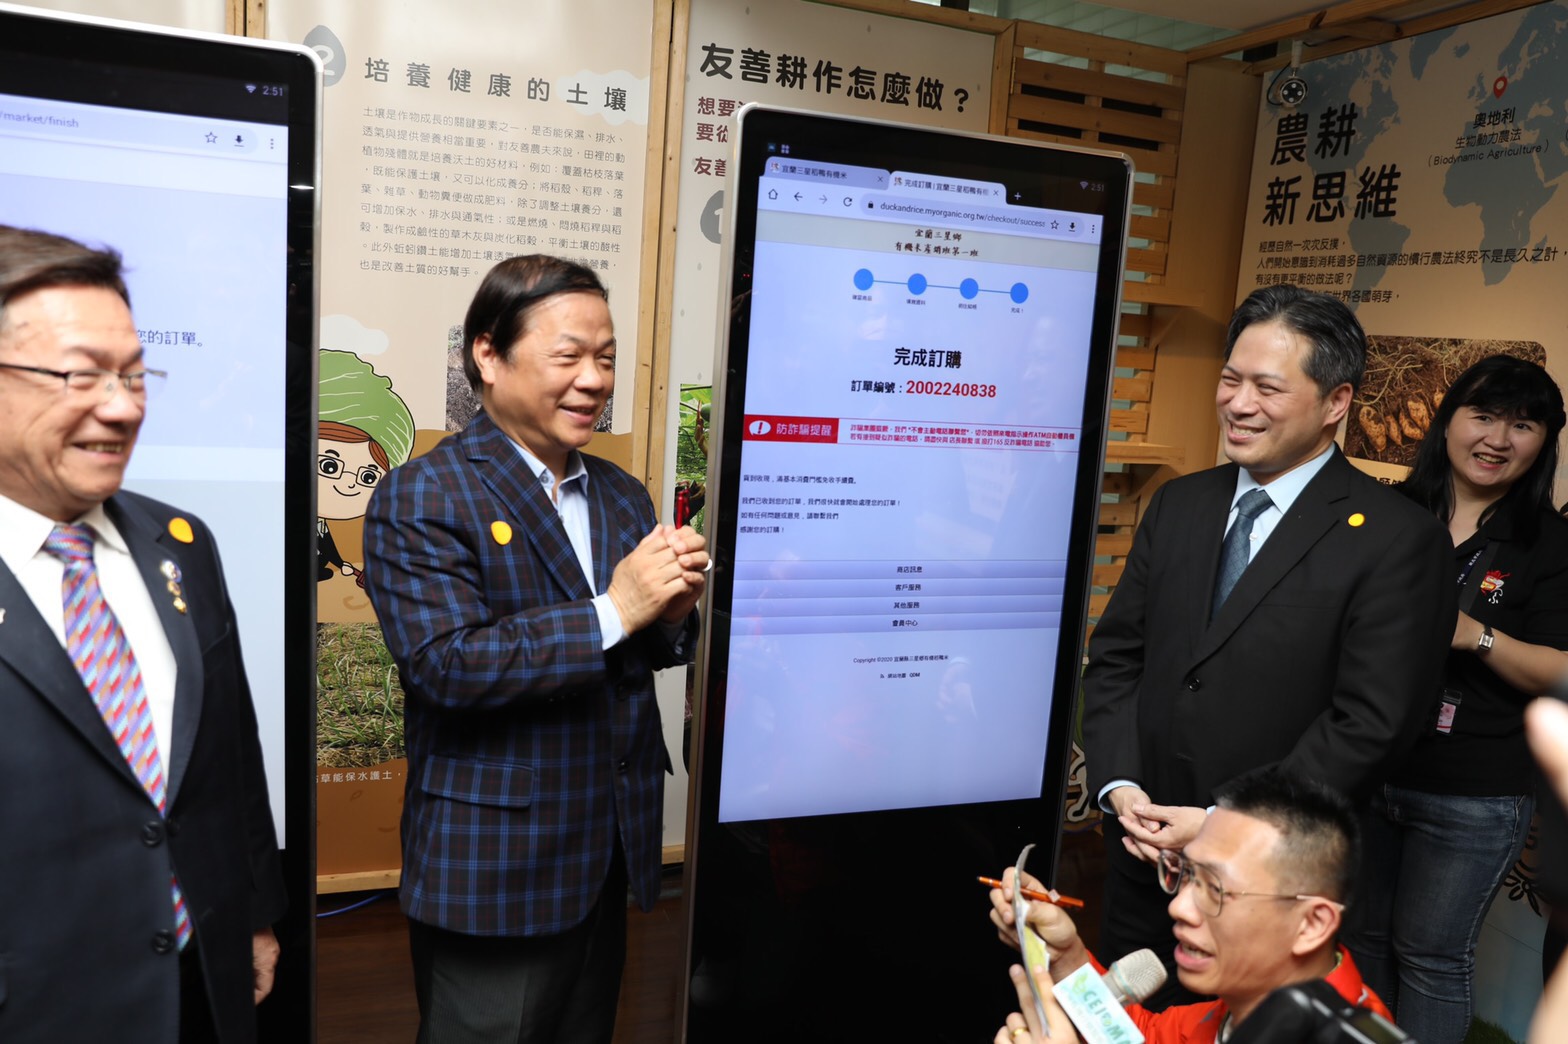 副市長吳明機與國際同濟會 亞太區主席 羅昌鑑體驗操作智能平台訂購有機農產品